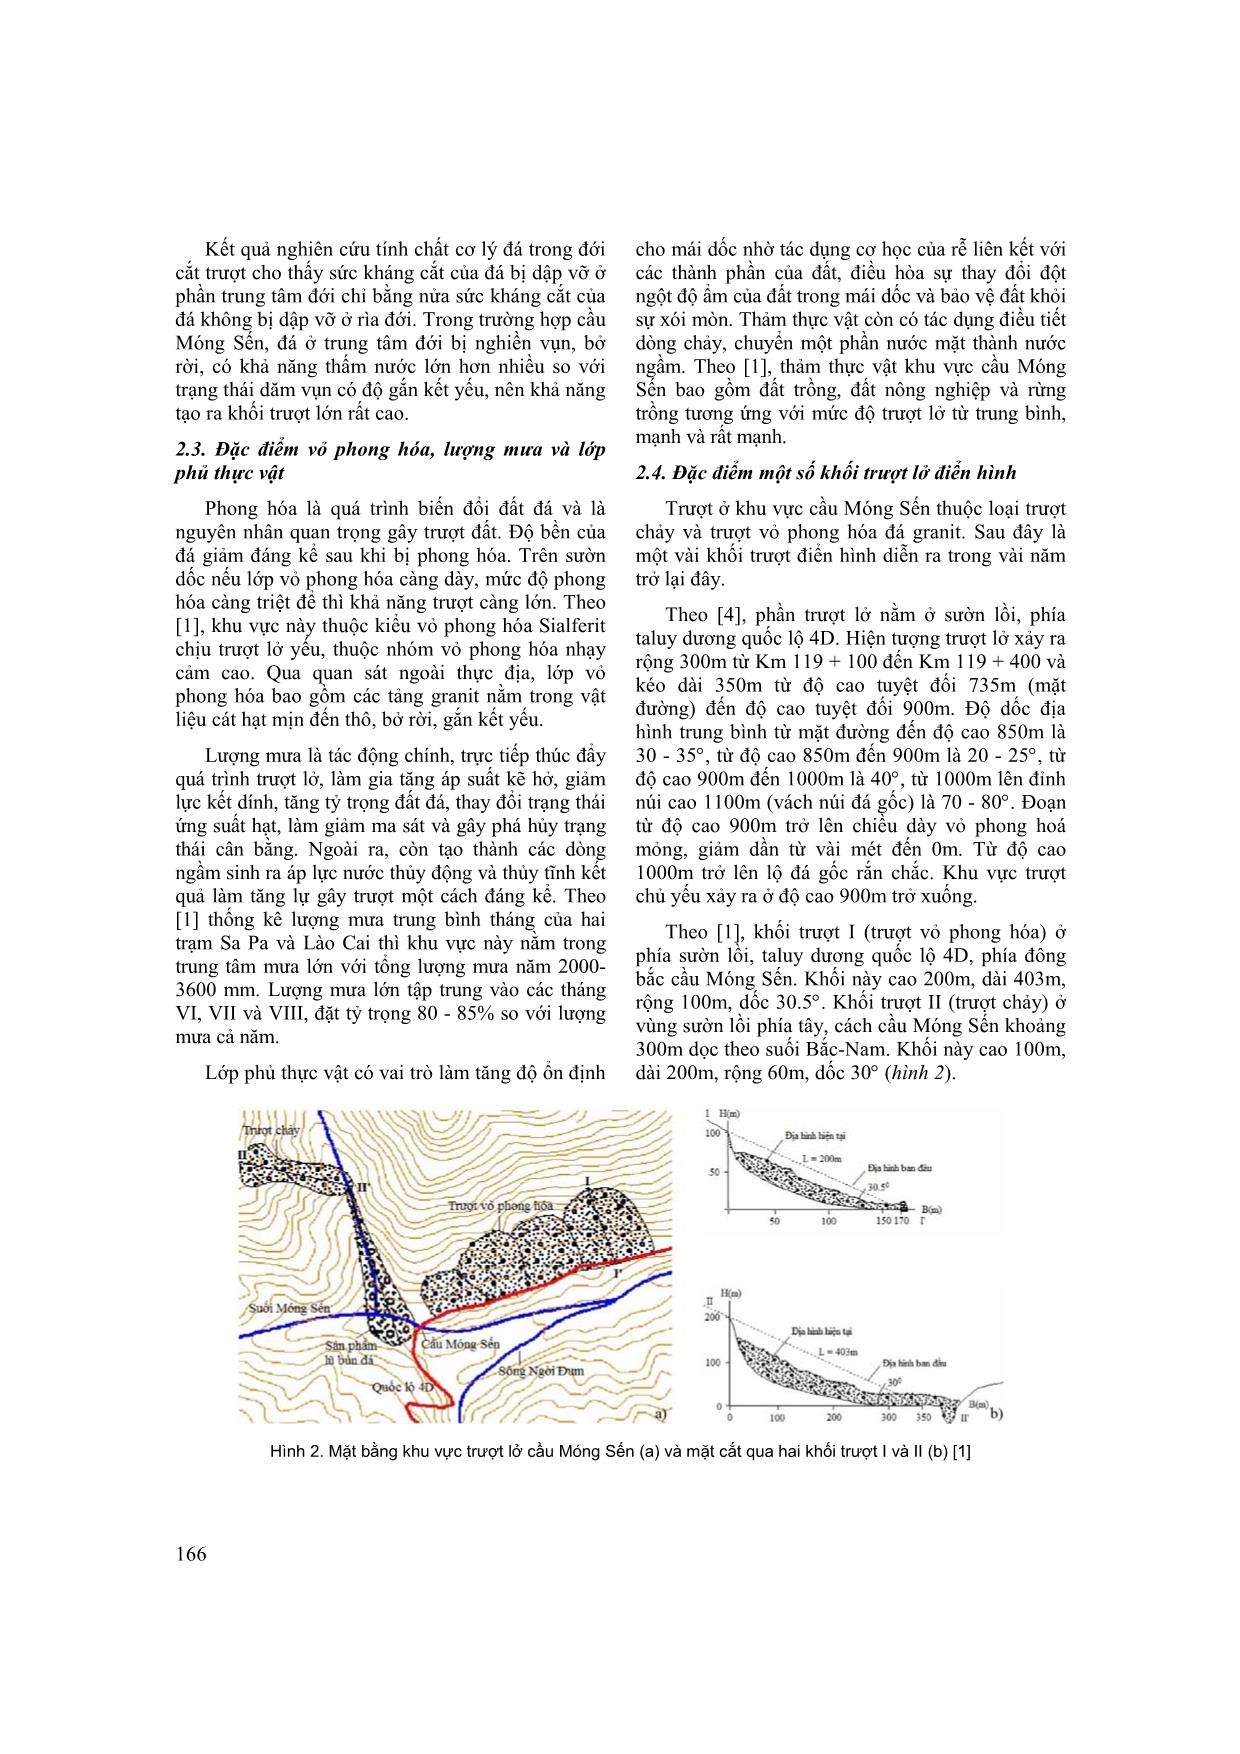 Nghiên cứu xác định nguyên nhân trượt lở khu vực cầu Móng Sến, tỉnh Lào Cai trang 3